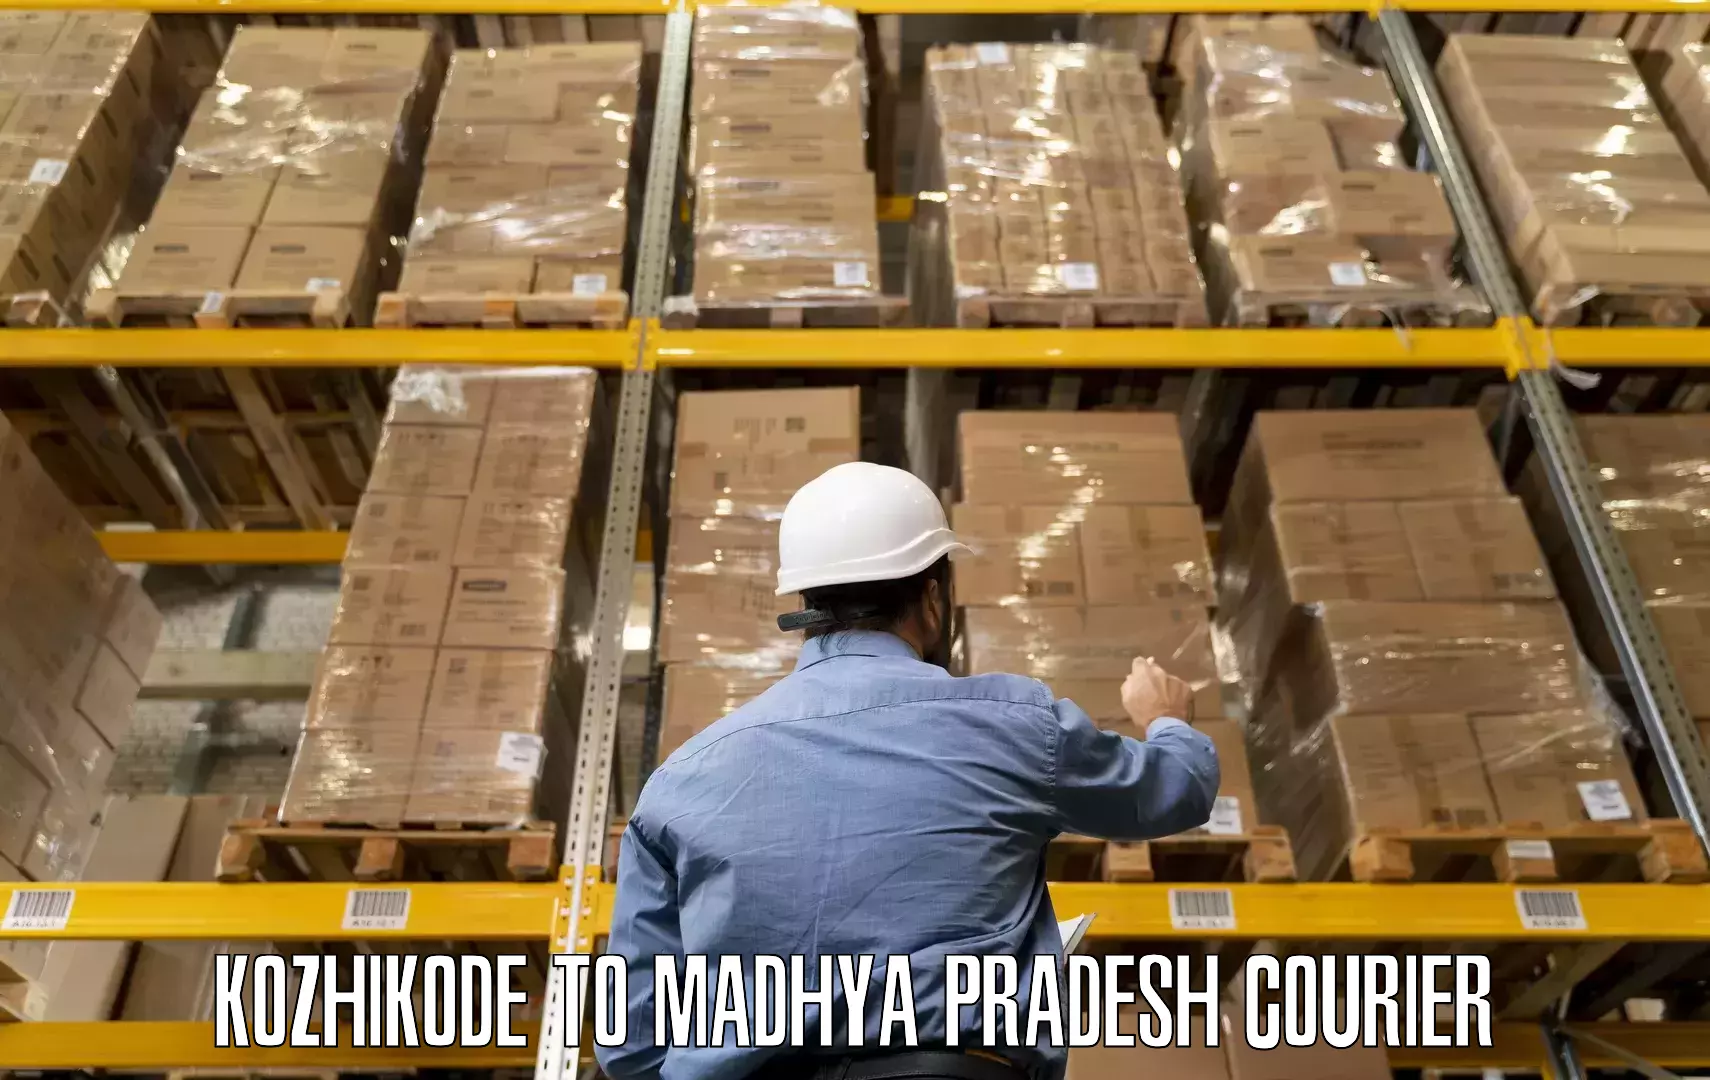 Skilled furniture transporters Kozhikode to Bichhiya